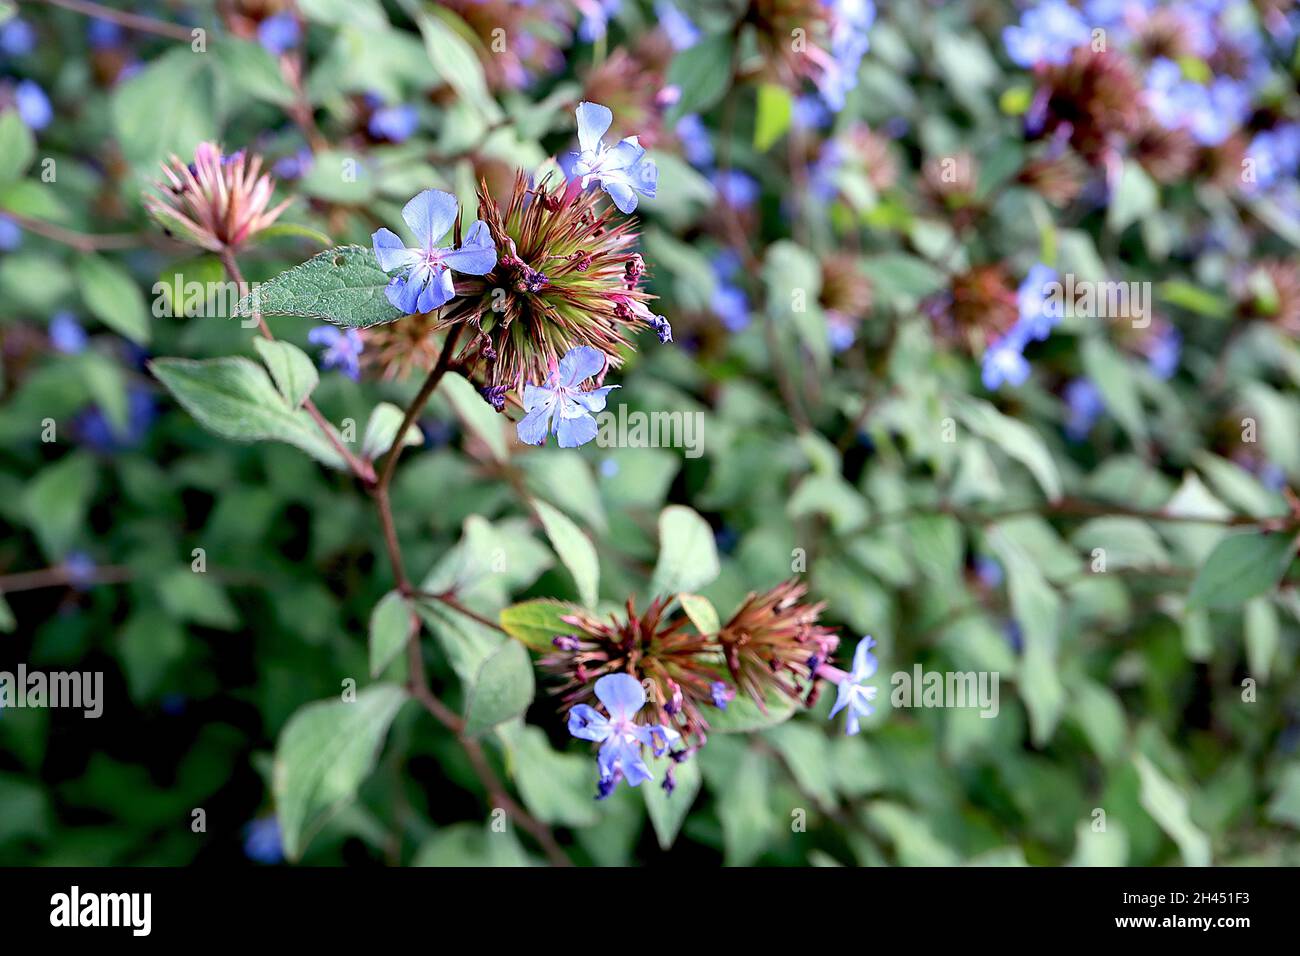 Ceratostigma willmottianum ‘Forest Blue’ Chinese plumbago – himmelblaue Blüten und frische grüne Blätter mit feinen roten Rändern, Oktober, England, Großbritannien Stockfoto